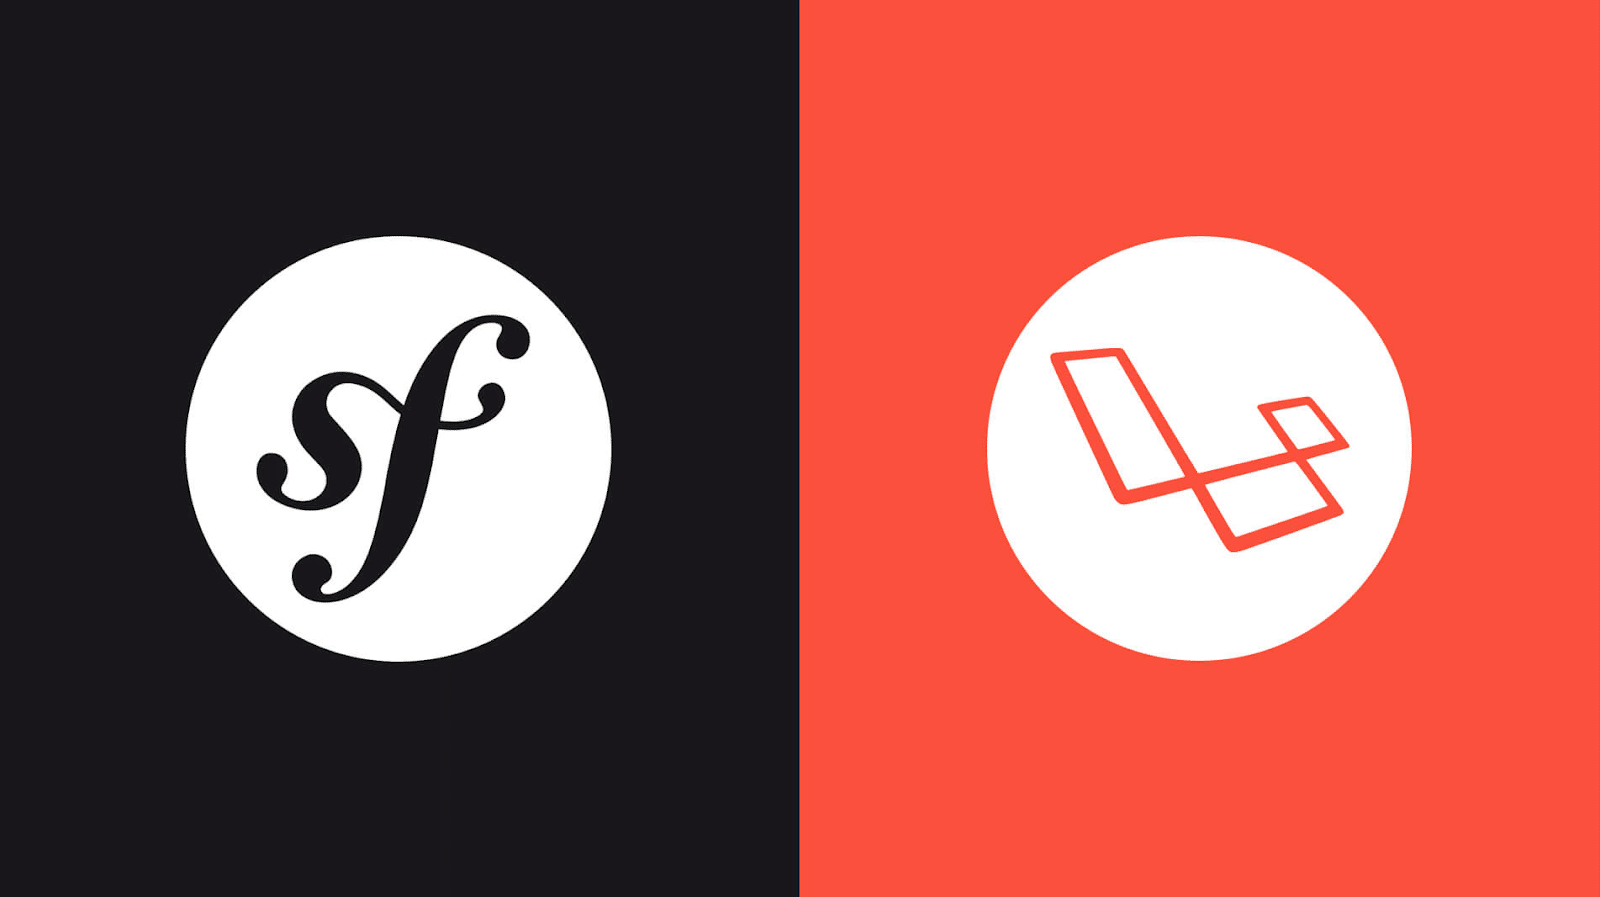 Het Symfony logo met de initialen "sf" in het wit bovenop een zwarte cirkel aan de linkerkant met de zwarte achtergrond en het Laravel logo op een rode achtergrond aan de rechterkant.